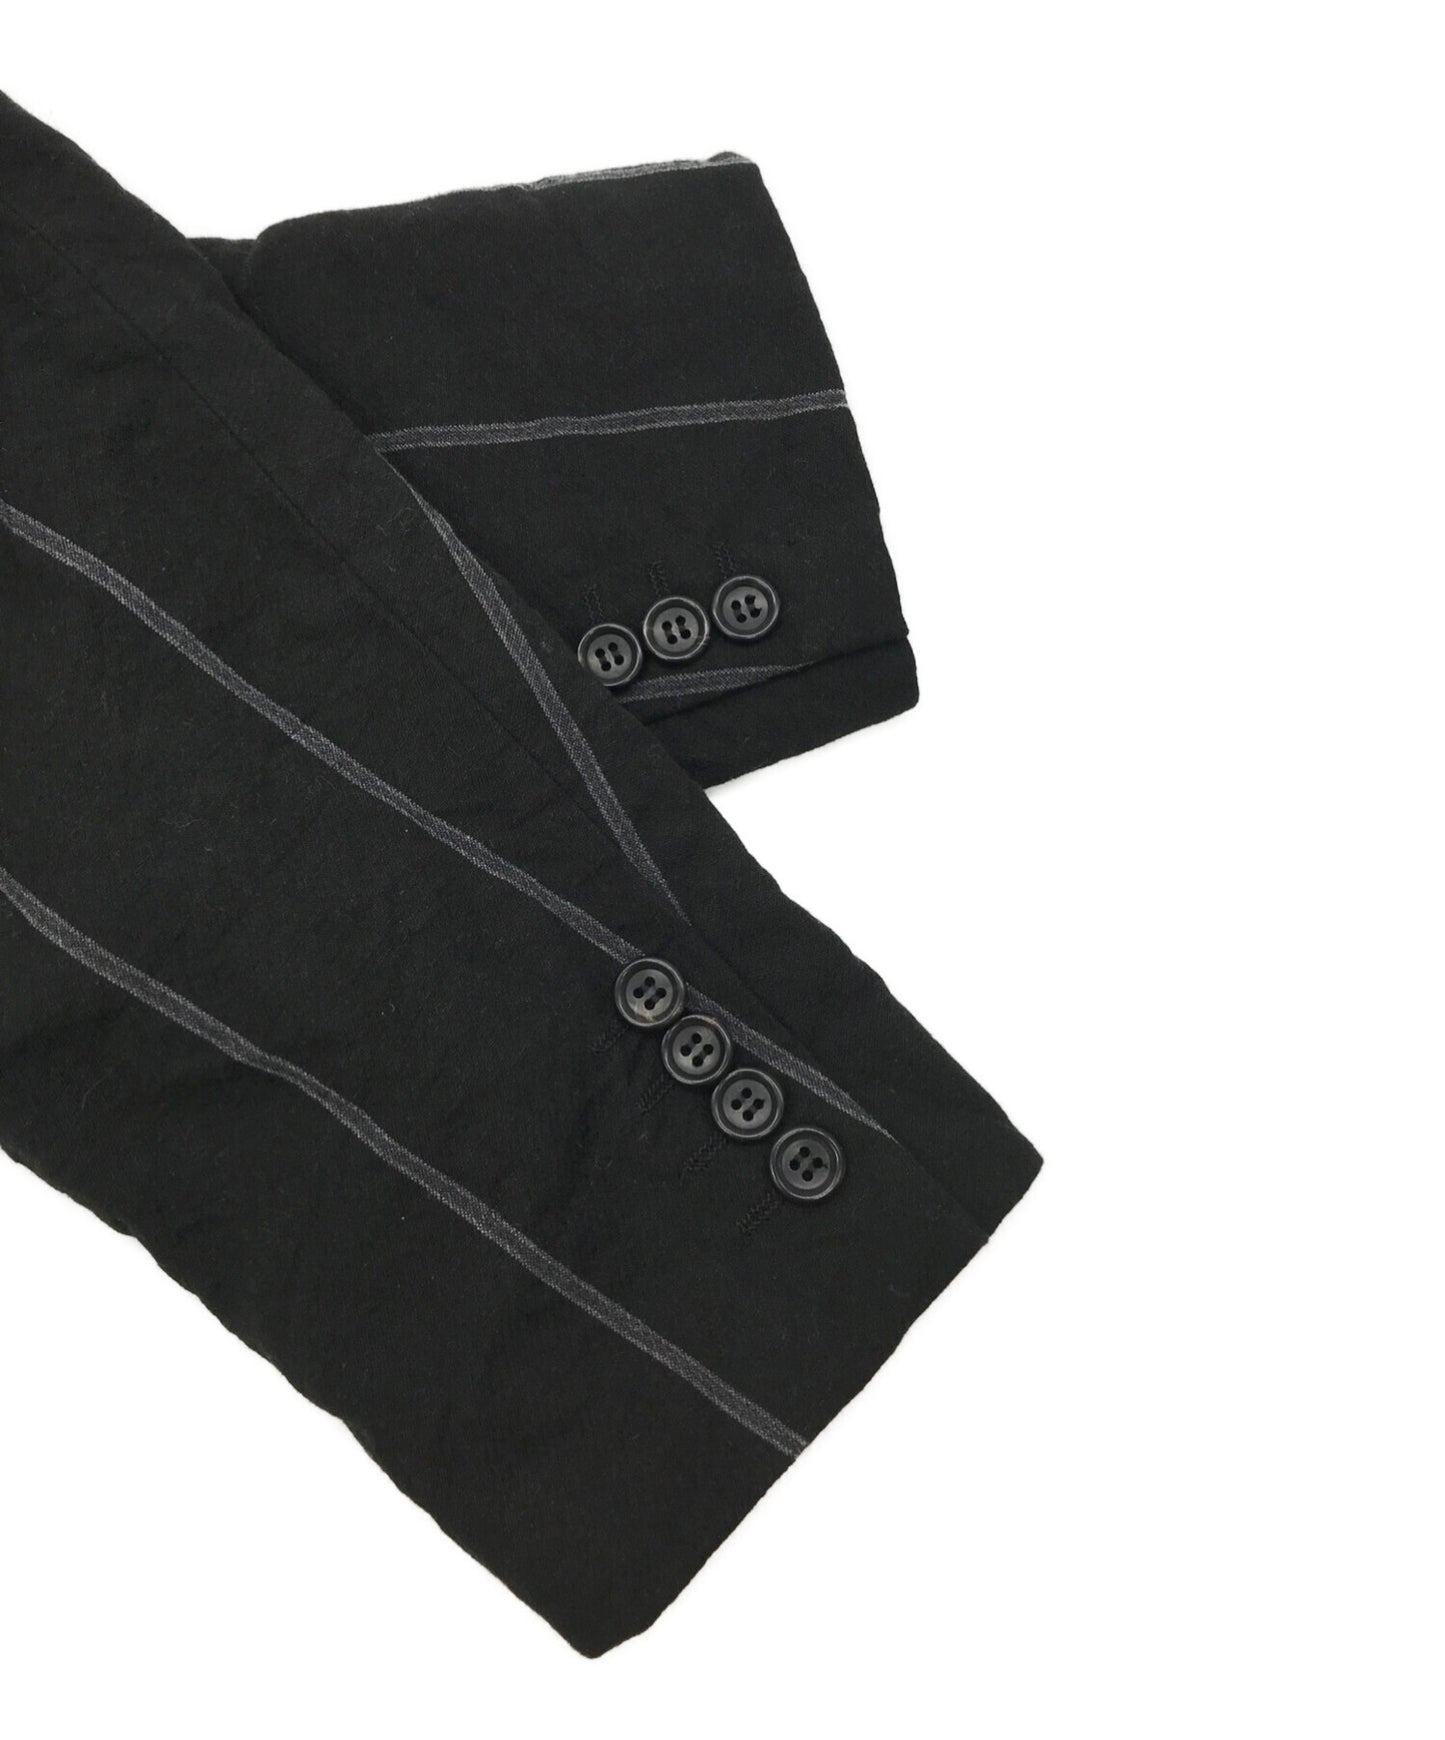 [Pre-owned] COMME des GARCONS HOMME DEUX Linen and cotton Wrinkled zipper pocket jacket Wrinkled tailored jacket DK-J049 AD2022